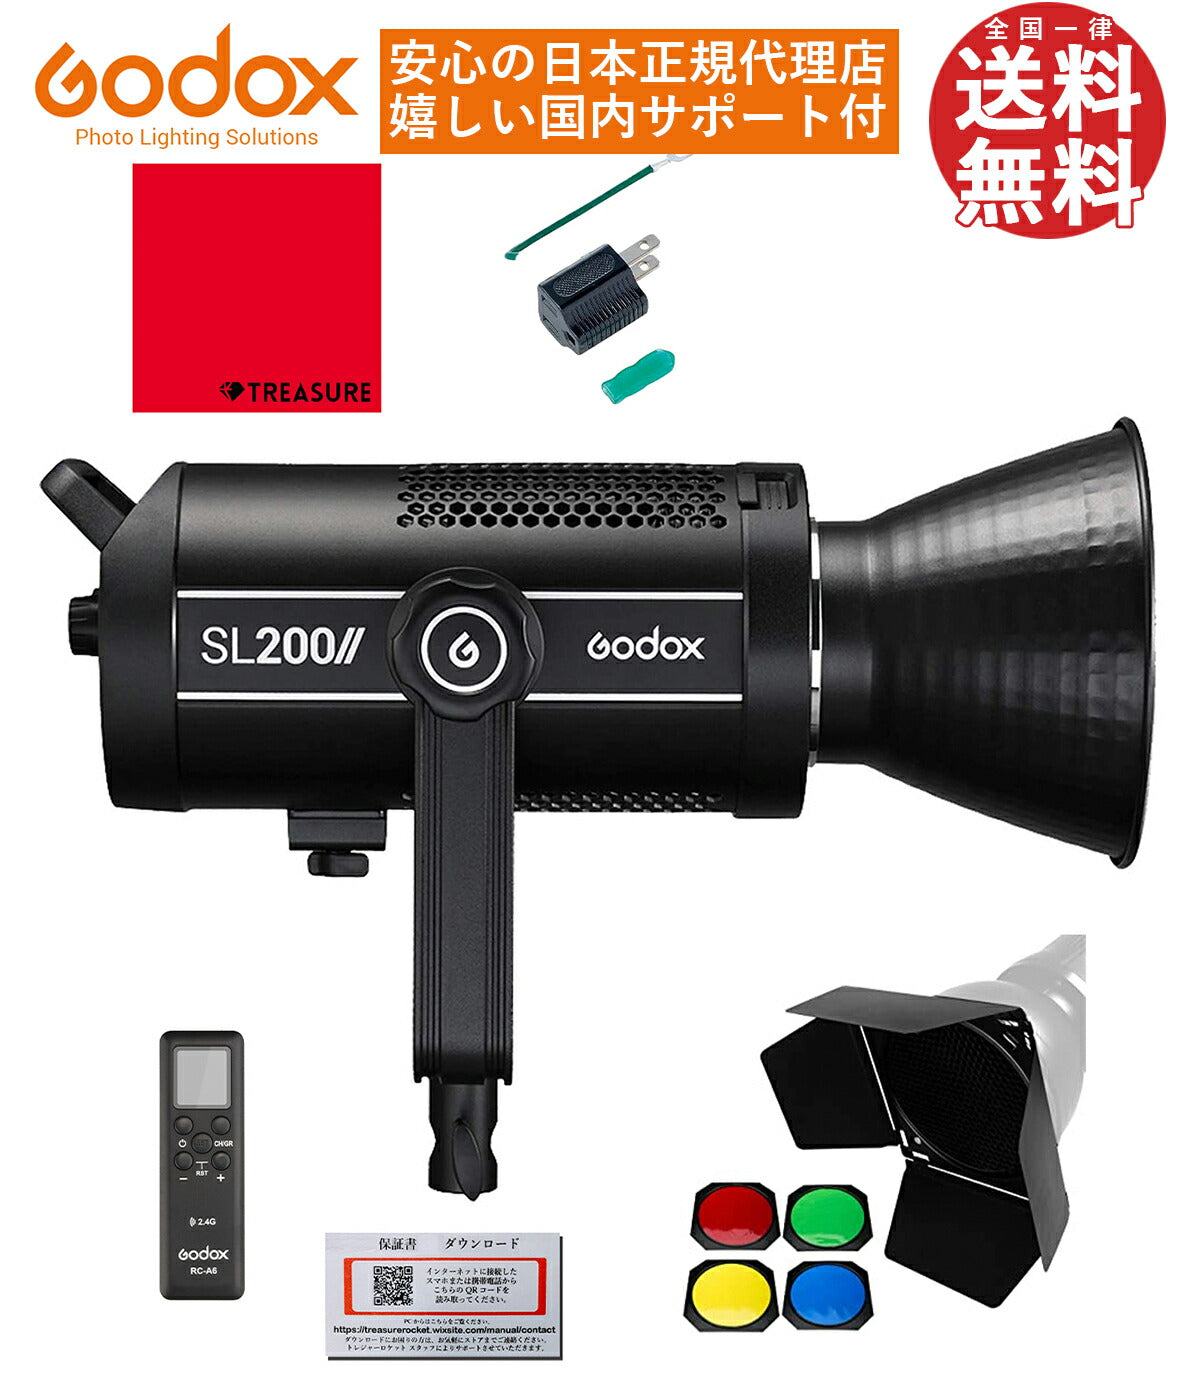 [国内正規代理店] Godox SL-200Wii 74000lux 定常光LEDライト ビデオライト Bowensマウント 5600±200K  [1年保証/日本語説明書/クロス付/セット品] (SL200Wii)